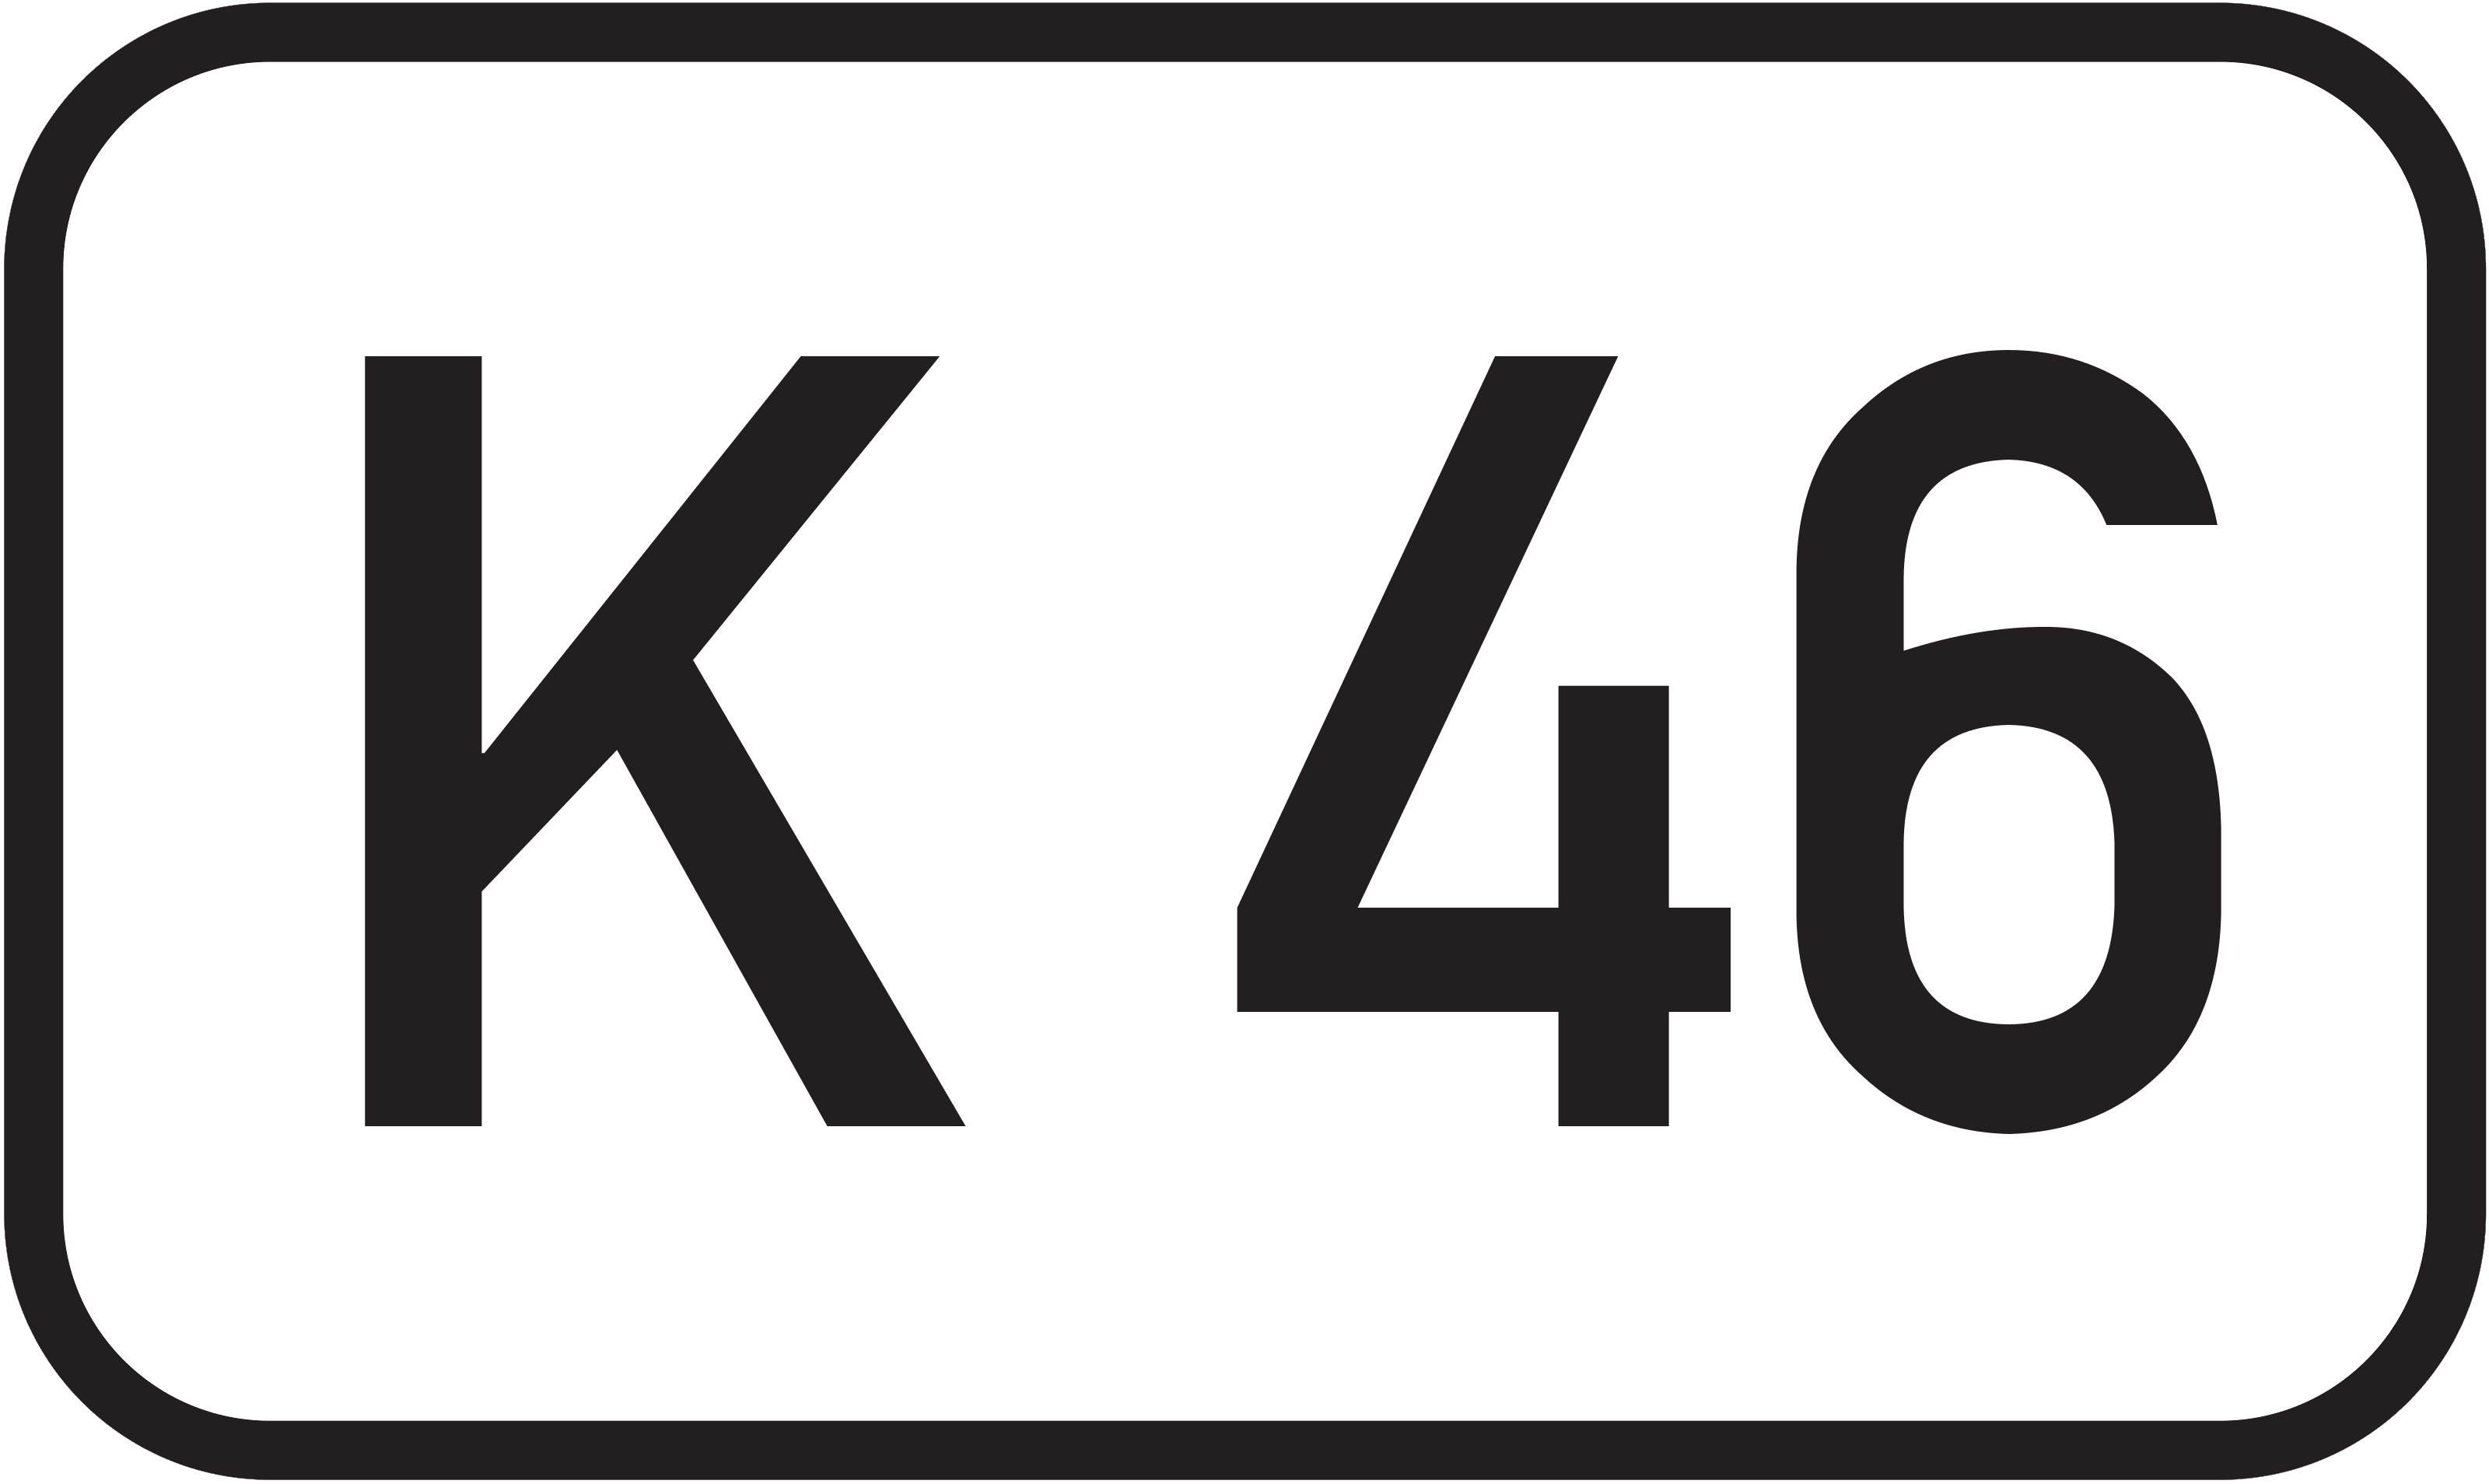 Bundesstraße K 46